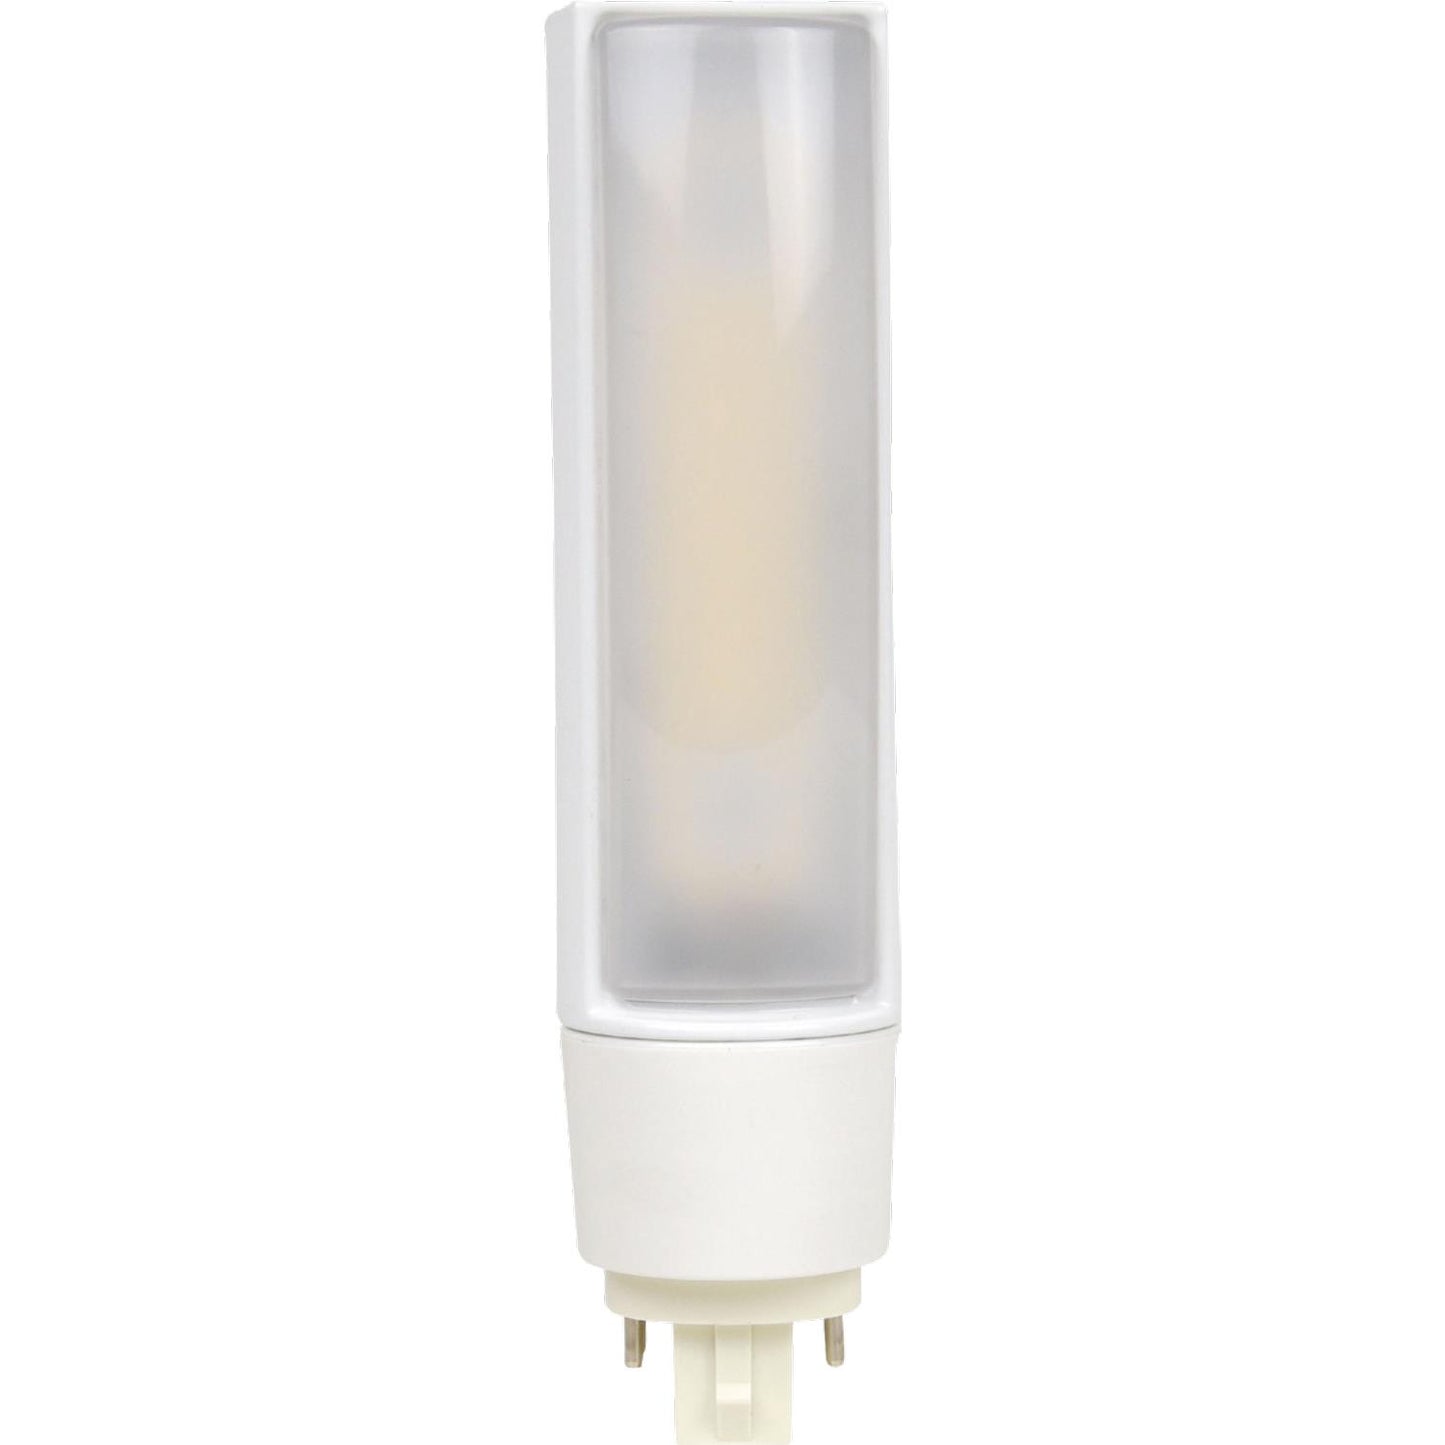 Sunlite PLT/G24q/LED/IS/16W/40K 16 Watt PL Lamp Cool White